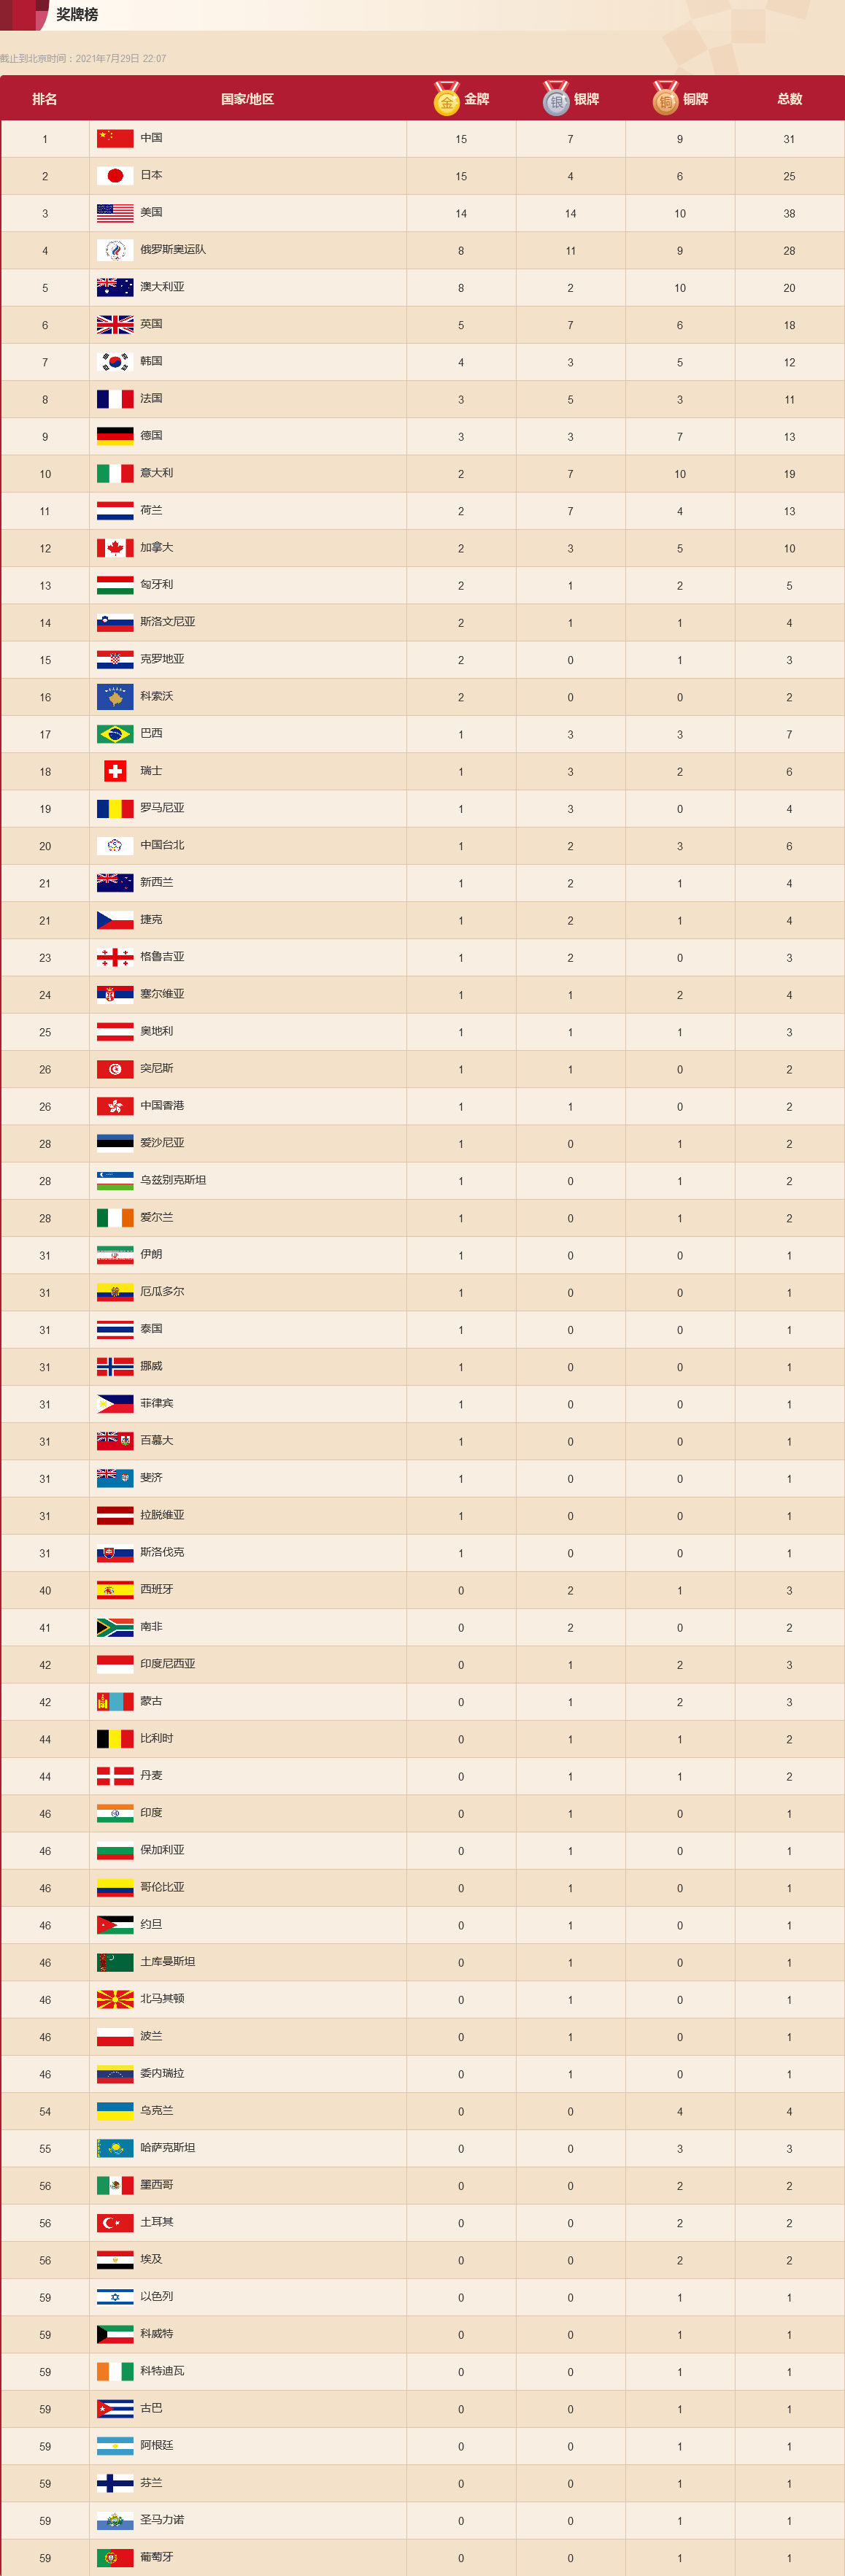 东京奥运会奖牌榜截至7月29日22时